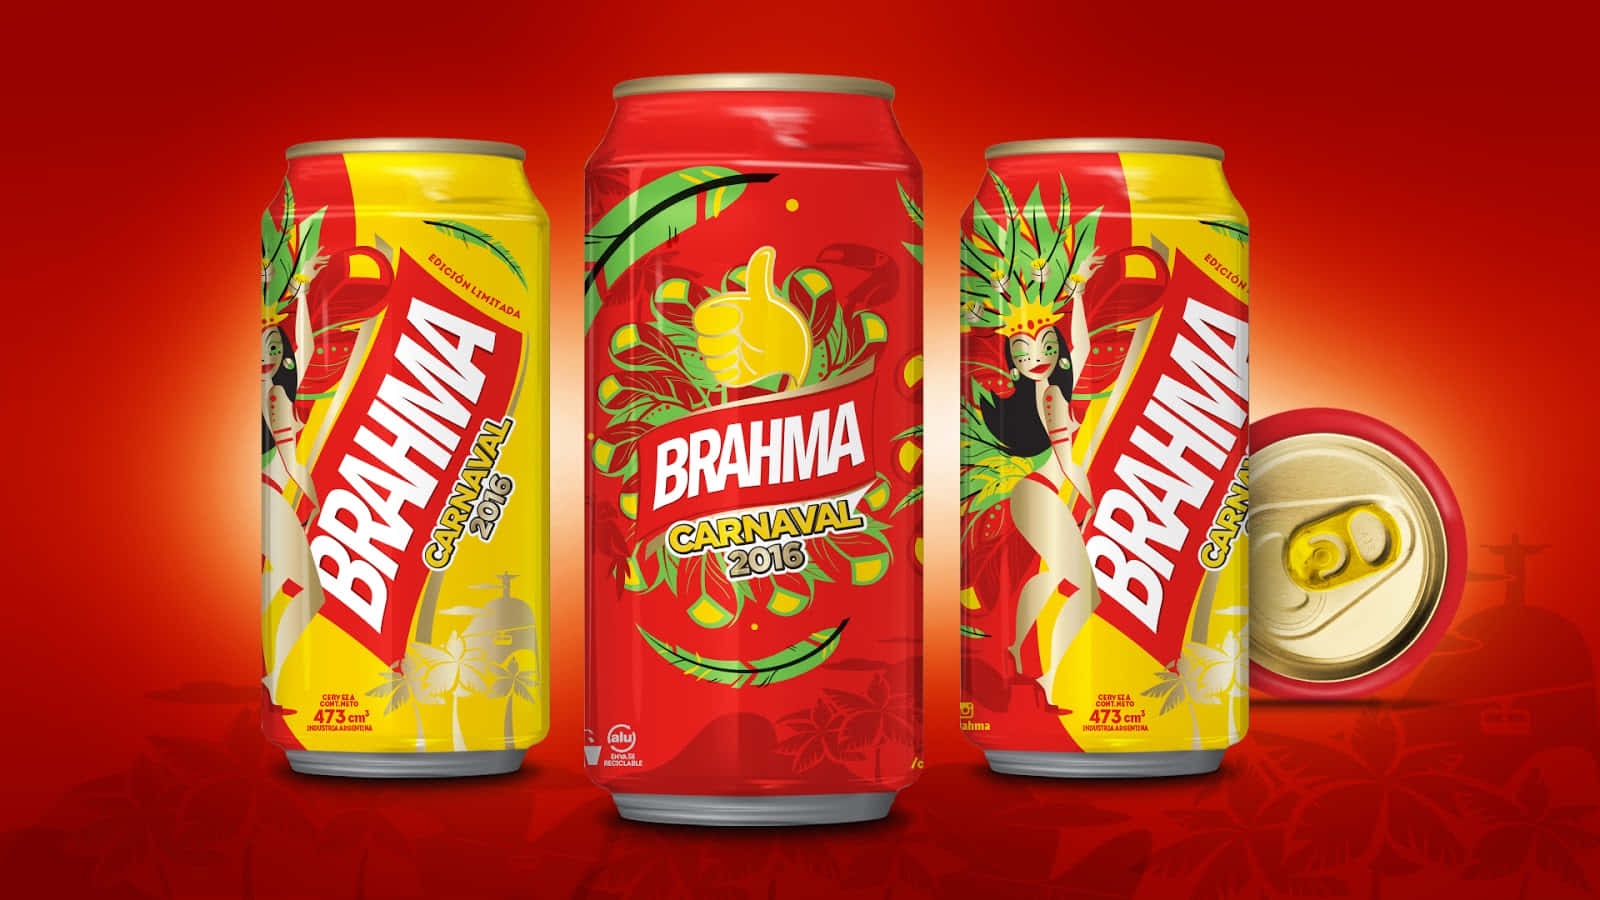 Brasilianischesbrahma-bier Verpackung Für Den Karneval 2016. Wallpaper